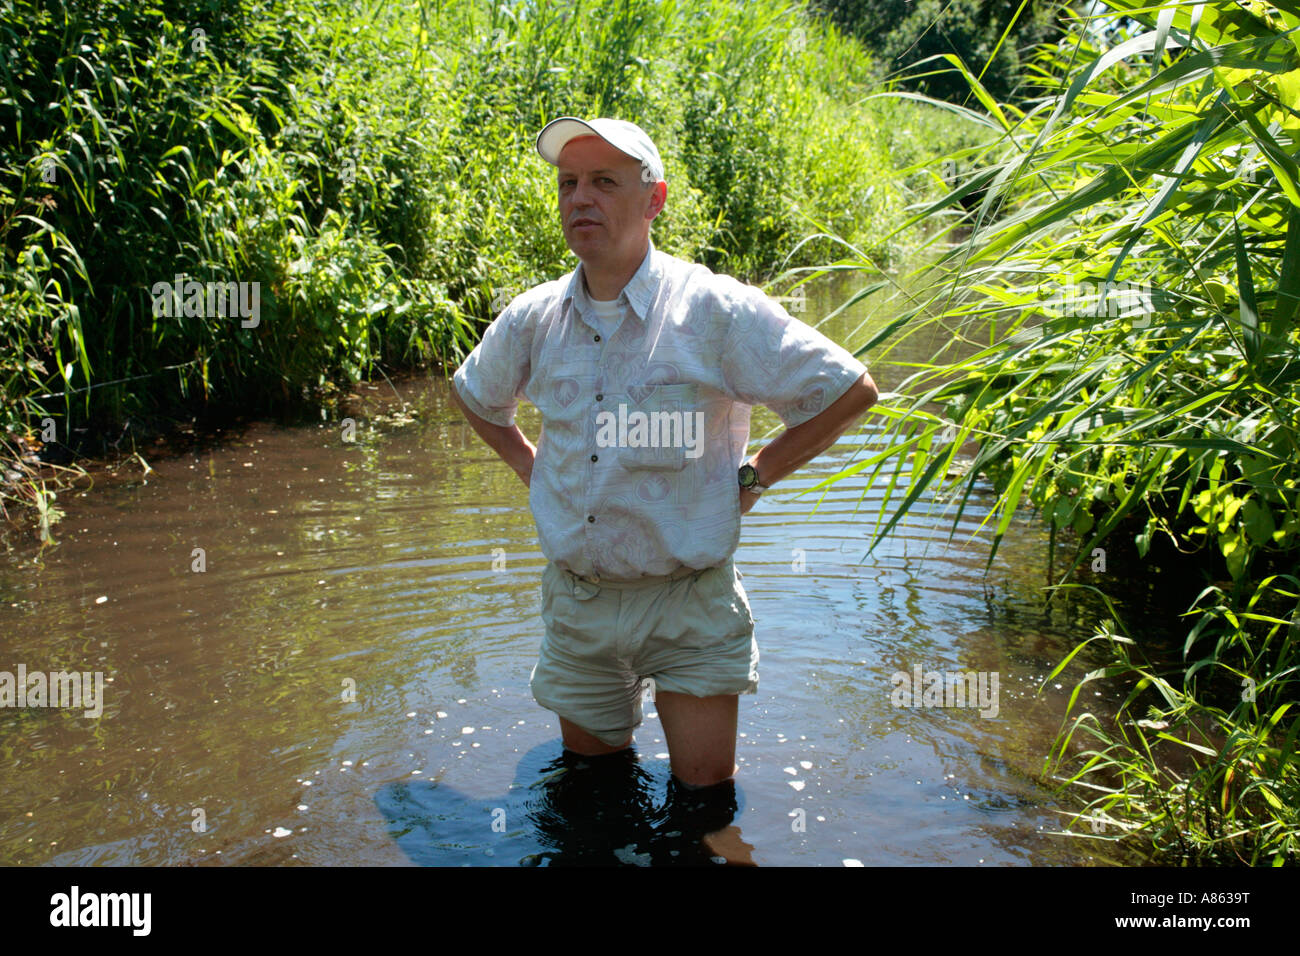 Mann mit aufgedreht Hose in einem schmutzigen Fluss stehend Stockfotografie  - Alamy